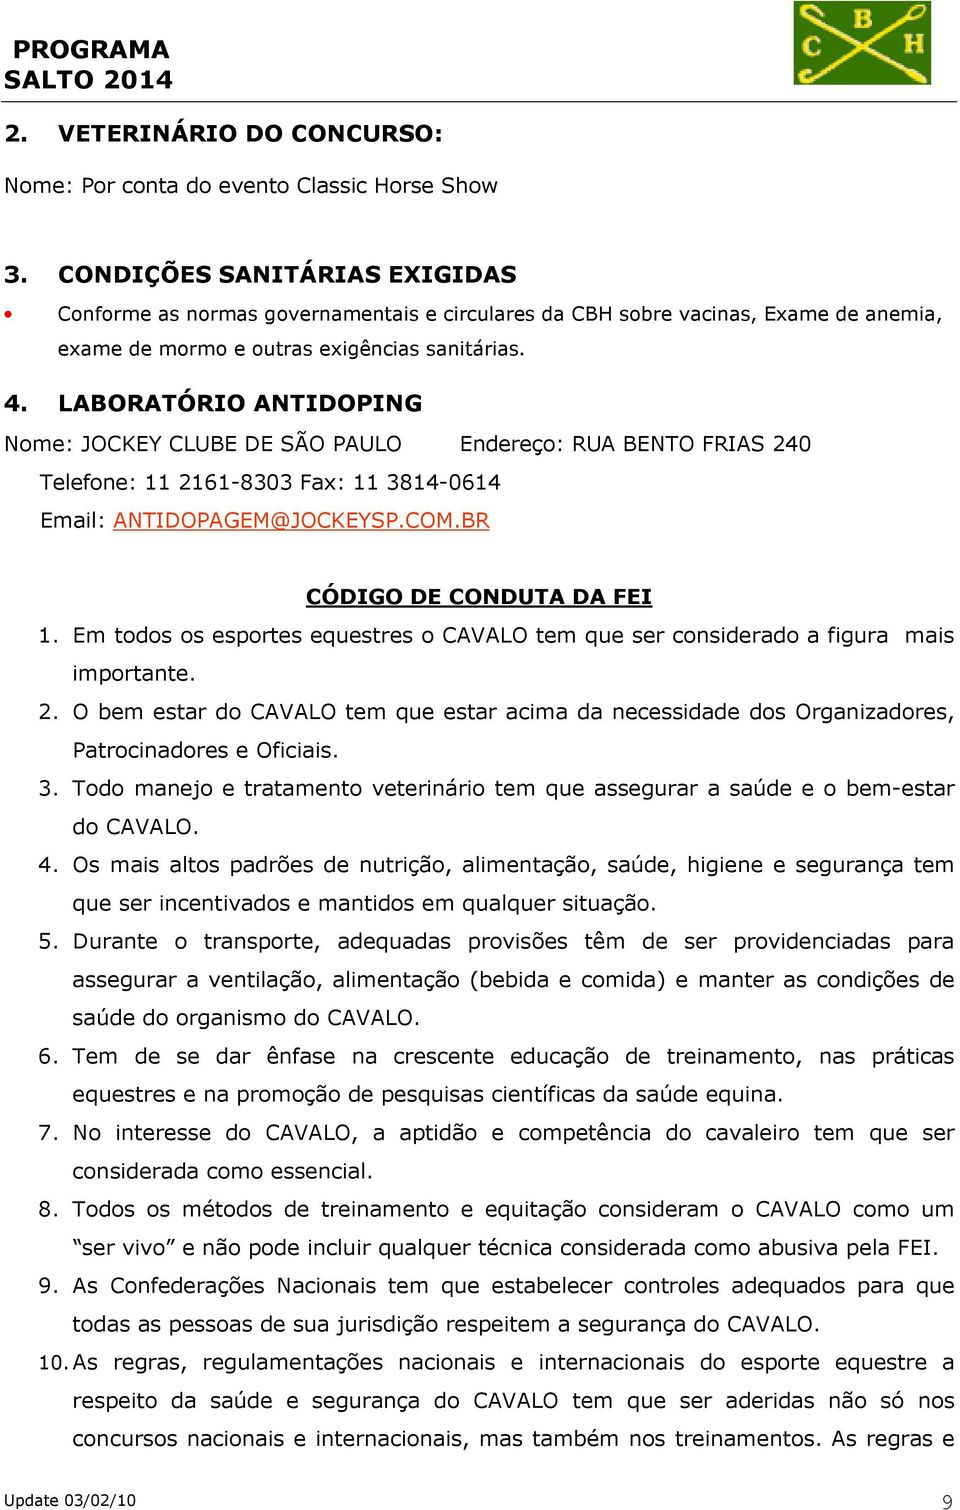 LABORATÓRIO ANTIDOPING Nome: JOCKEY CLUBE DE SÃO PAULO Endereço: RUA BENTO FRIAS 240 Telefone: 11 2161-8303 Fax: 11 3814-0614 Email: ANTIDOPAGEM@JOCKEYSP.COM.BR CÓDIGO DE CONDUTA DA FEI 1.